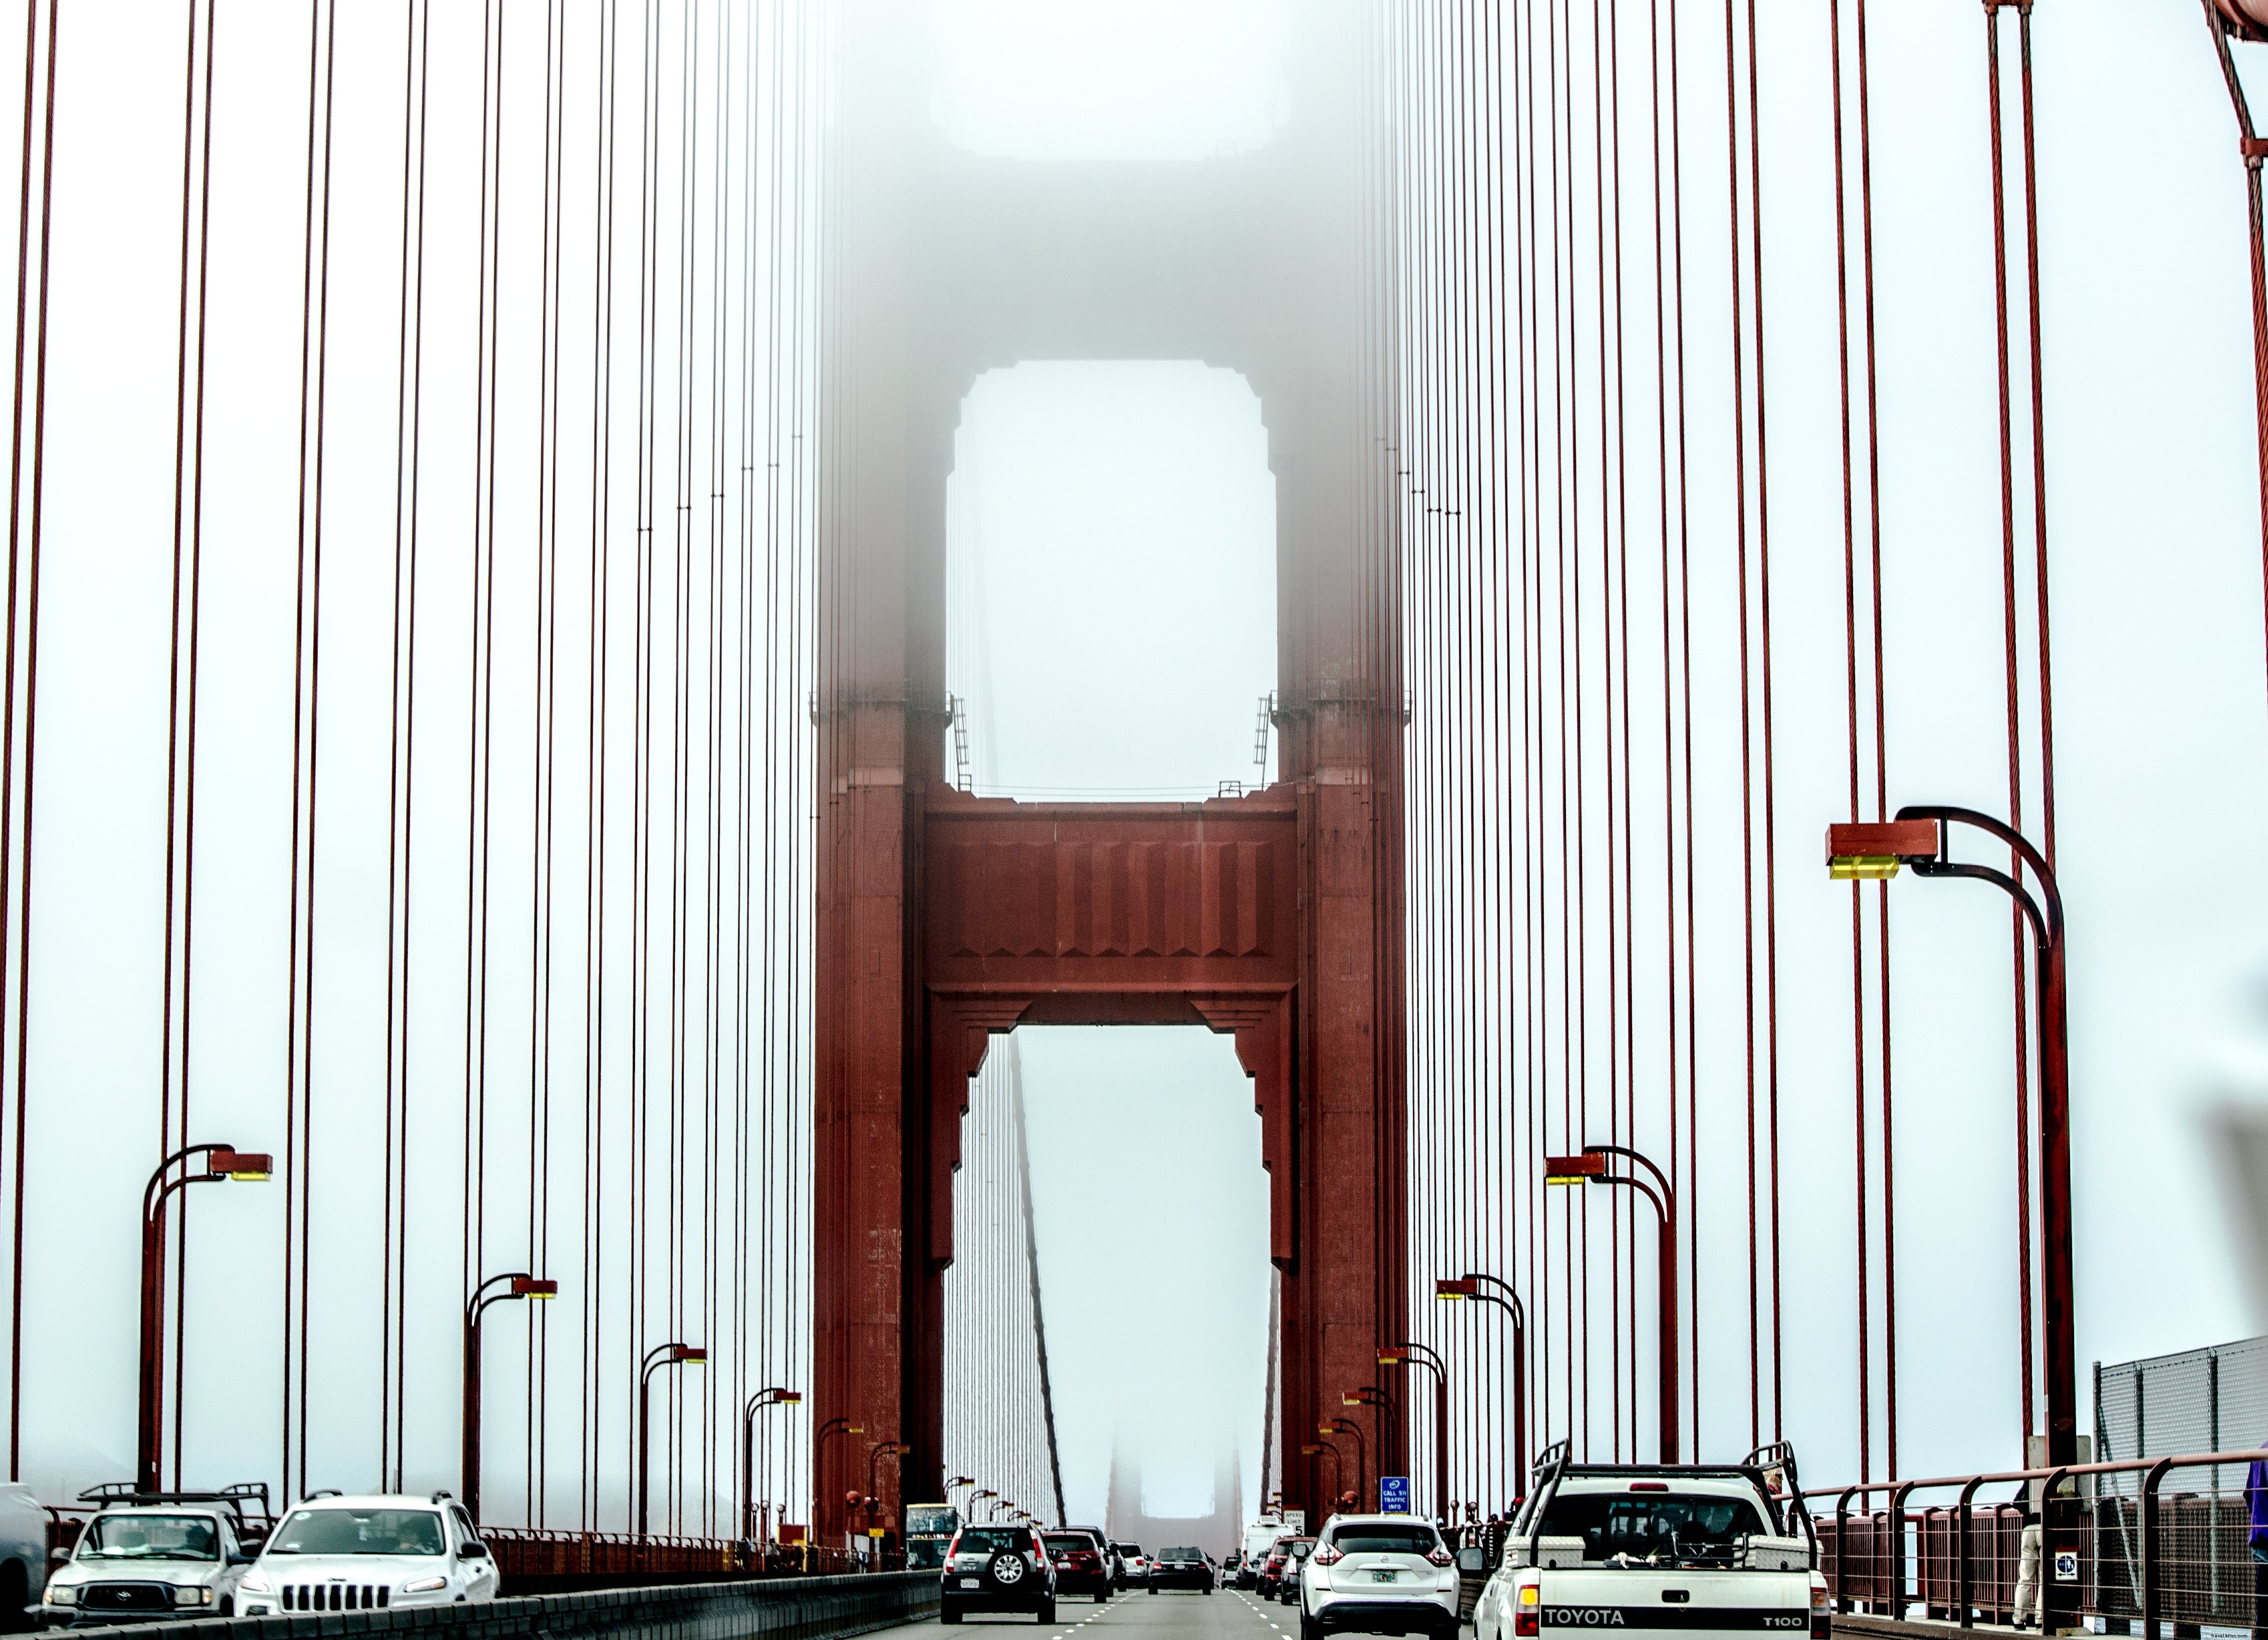 Le trafic sur un pont suspendu suspendu dans la brume Photo